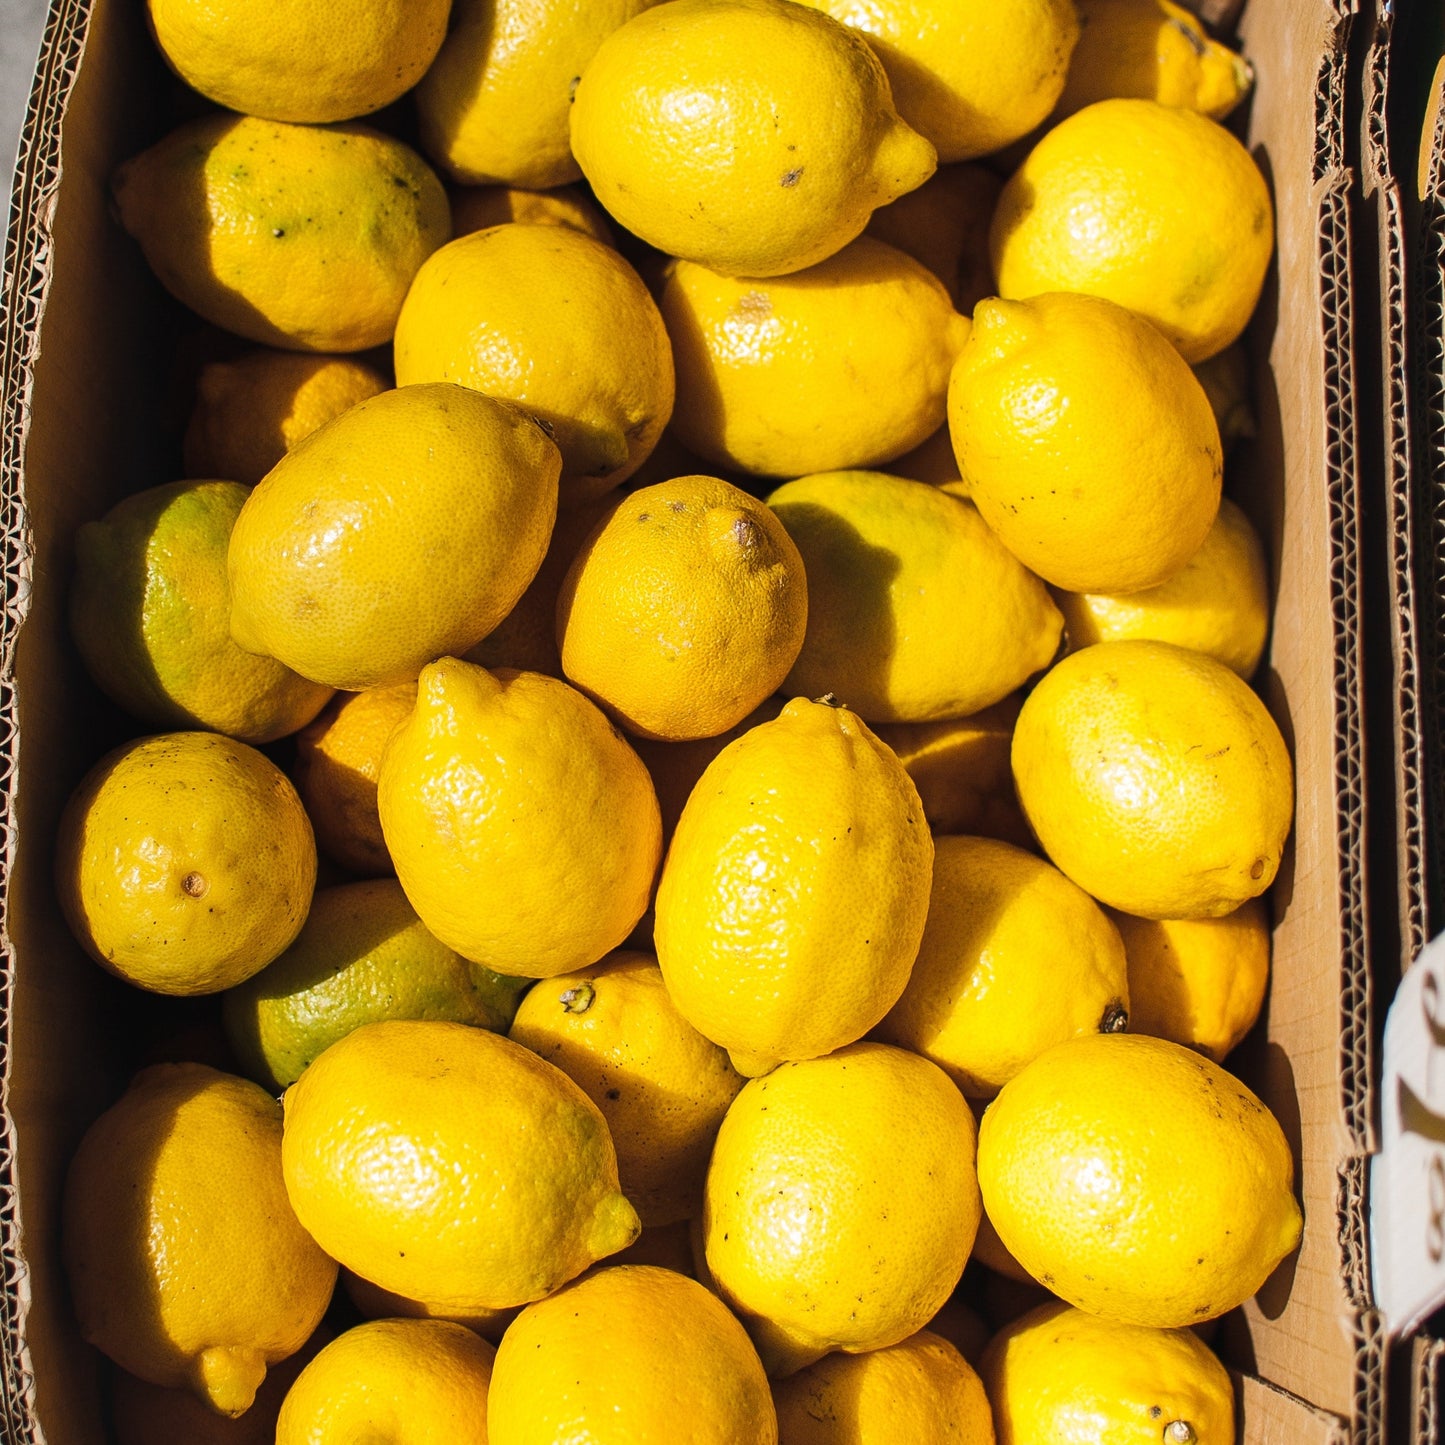 Lemons for production